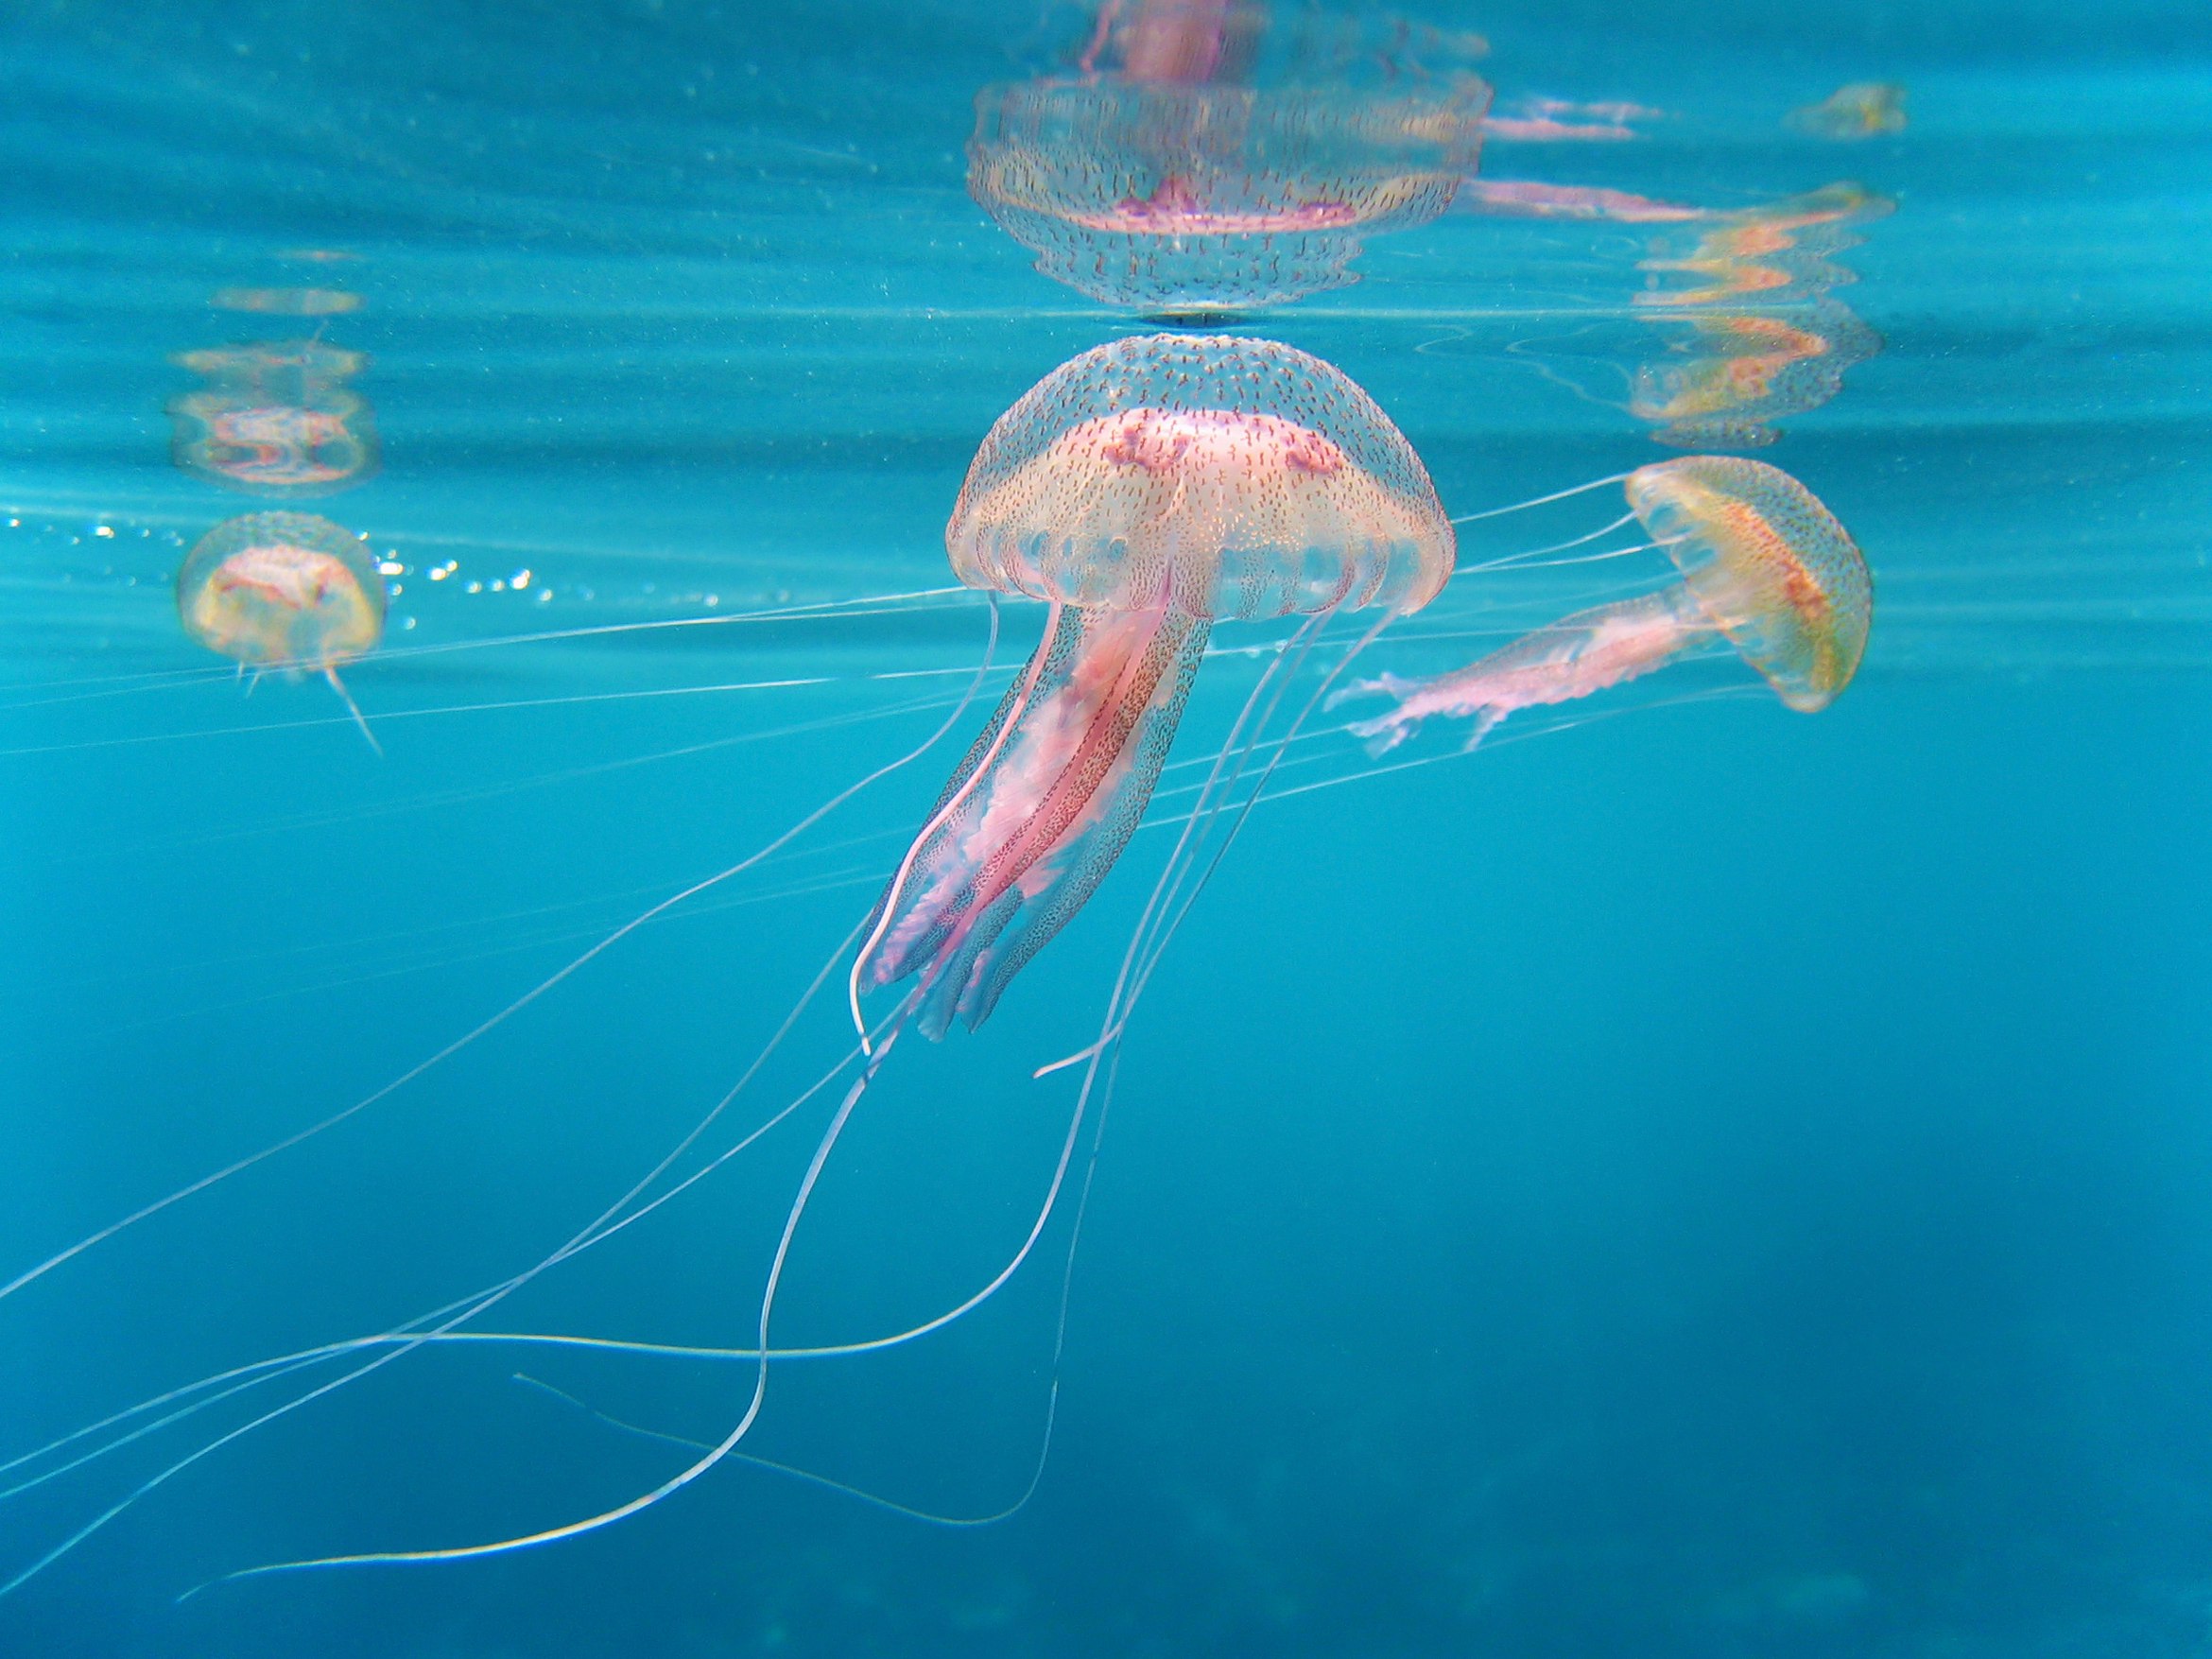 Druhová rozmanitost medúz je pestrá – existuje jich více než 2000 druhů, z nichž některé dosud nebyly identifikovány